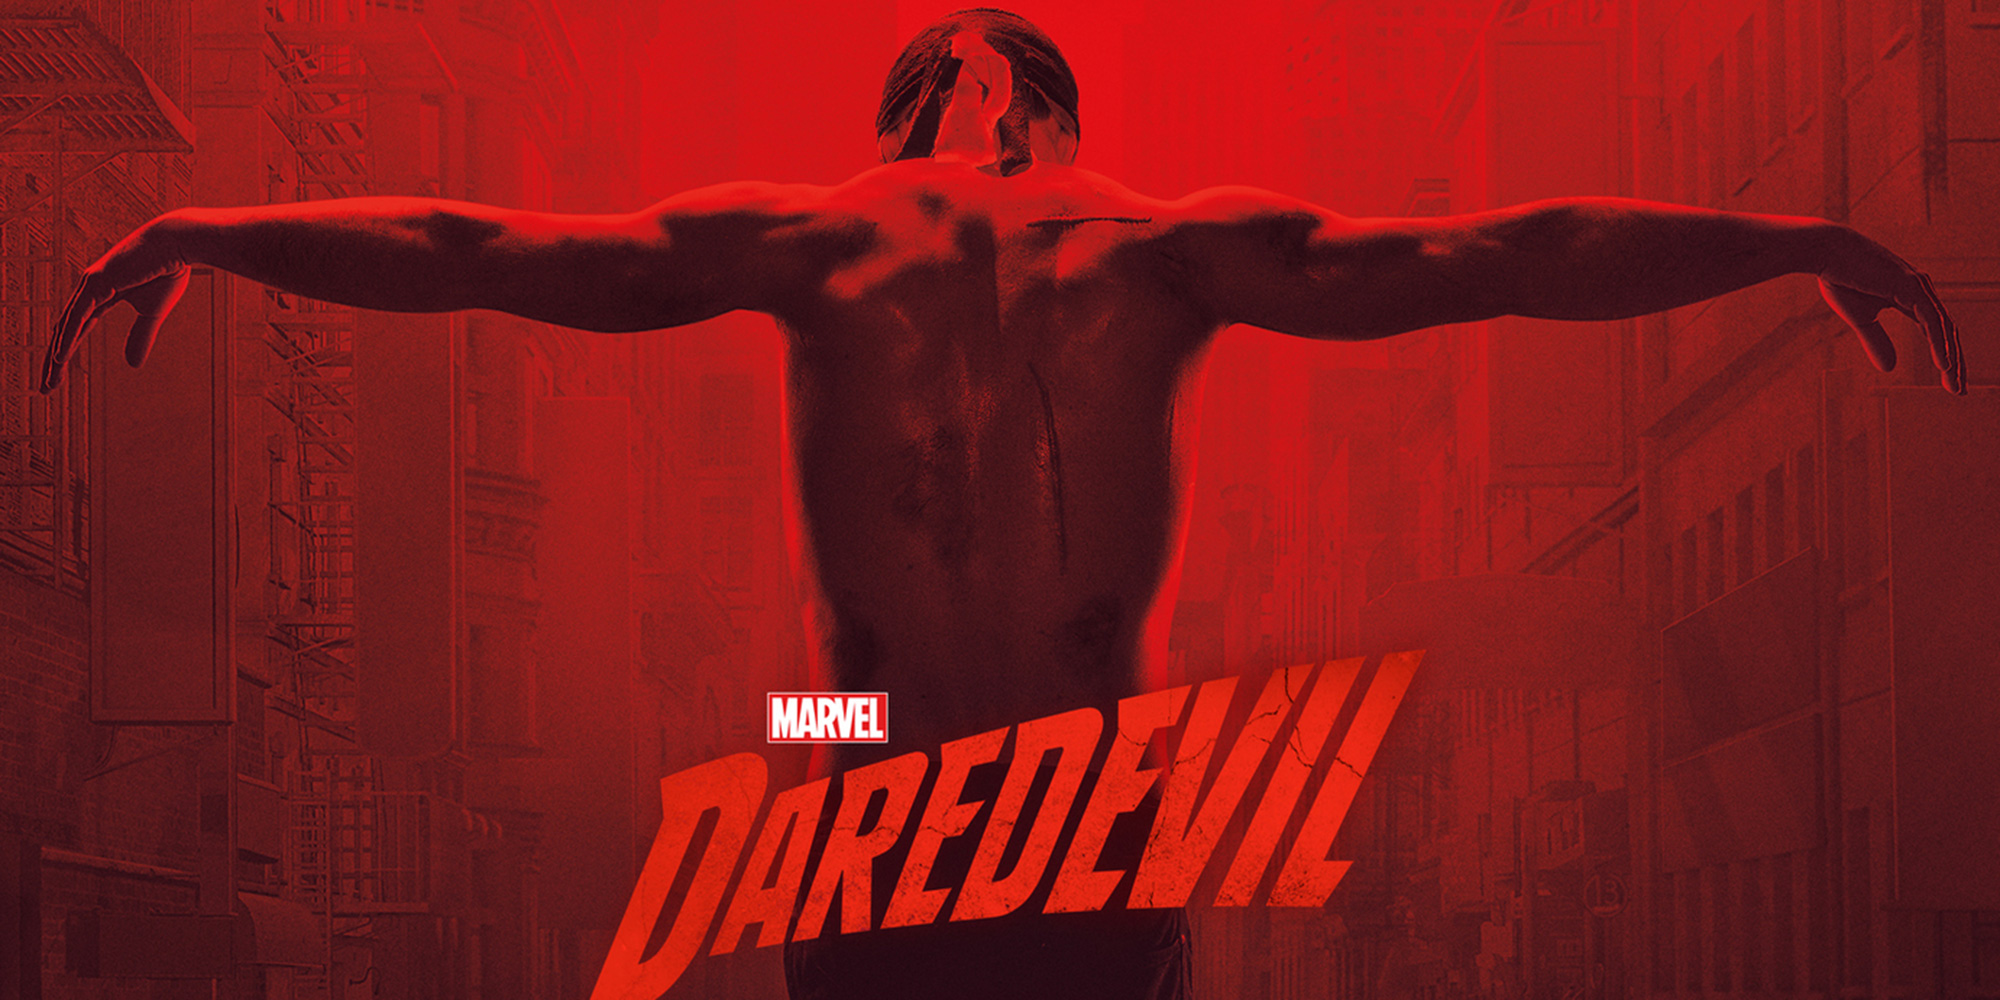  La saison 3 de Marvel’s Daredevil arrive !